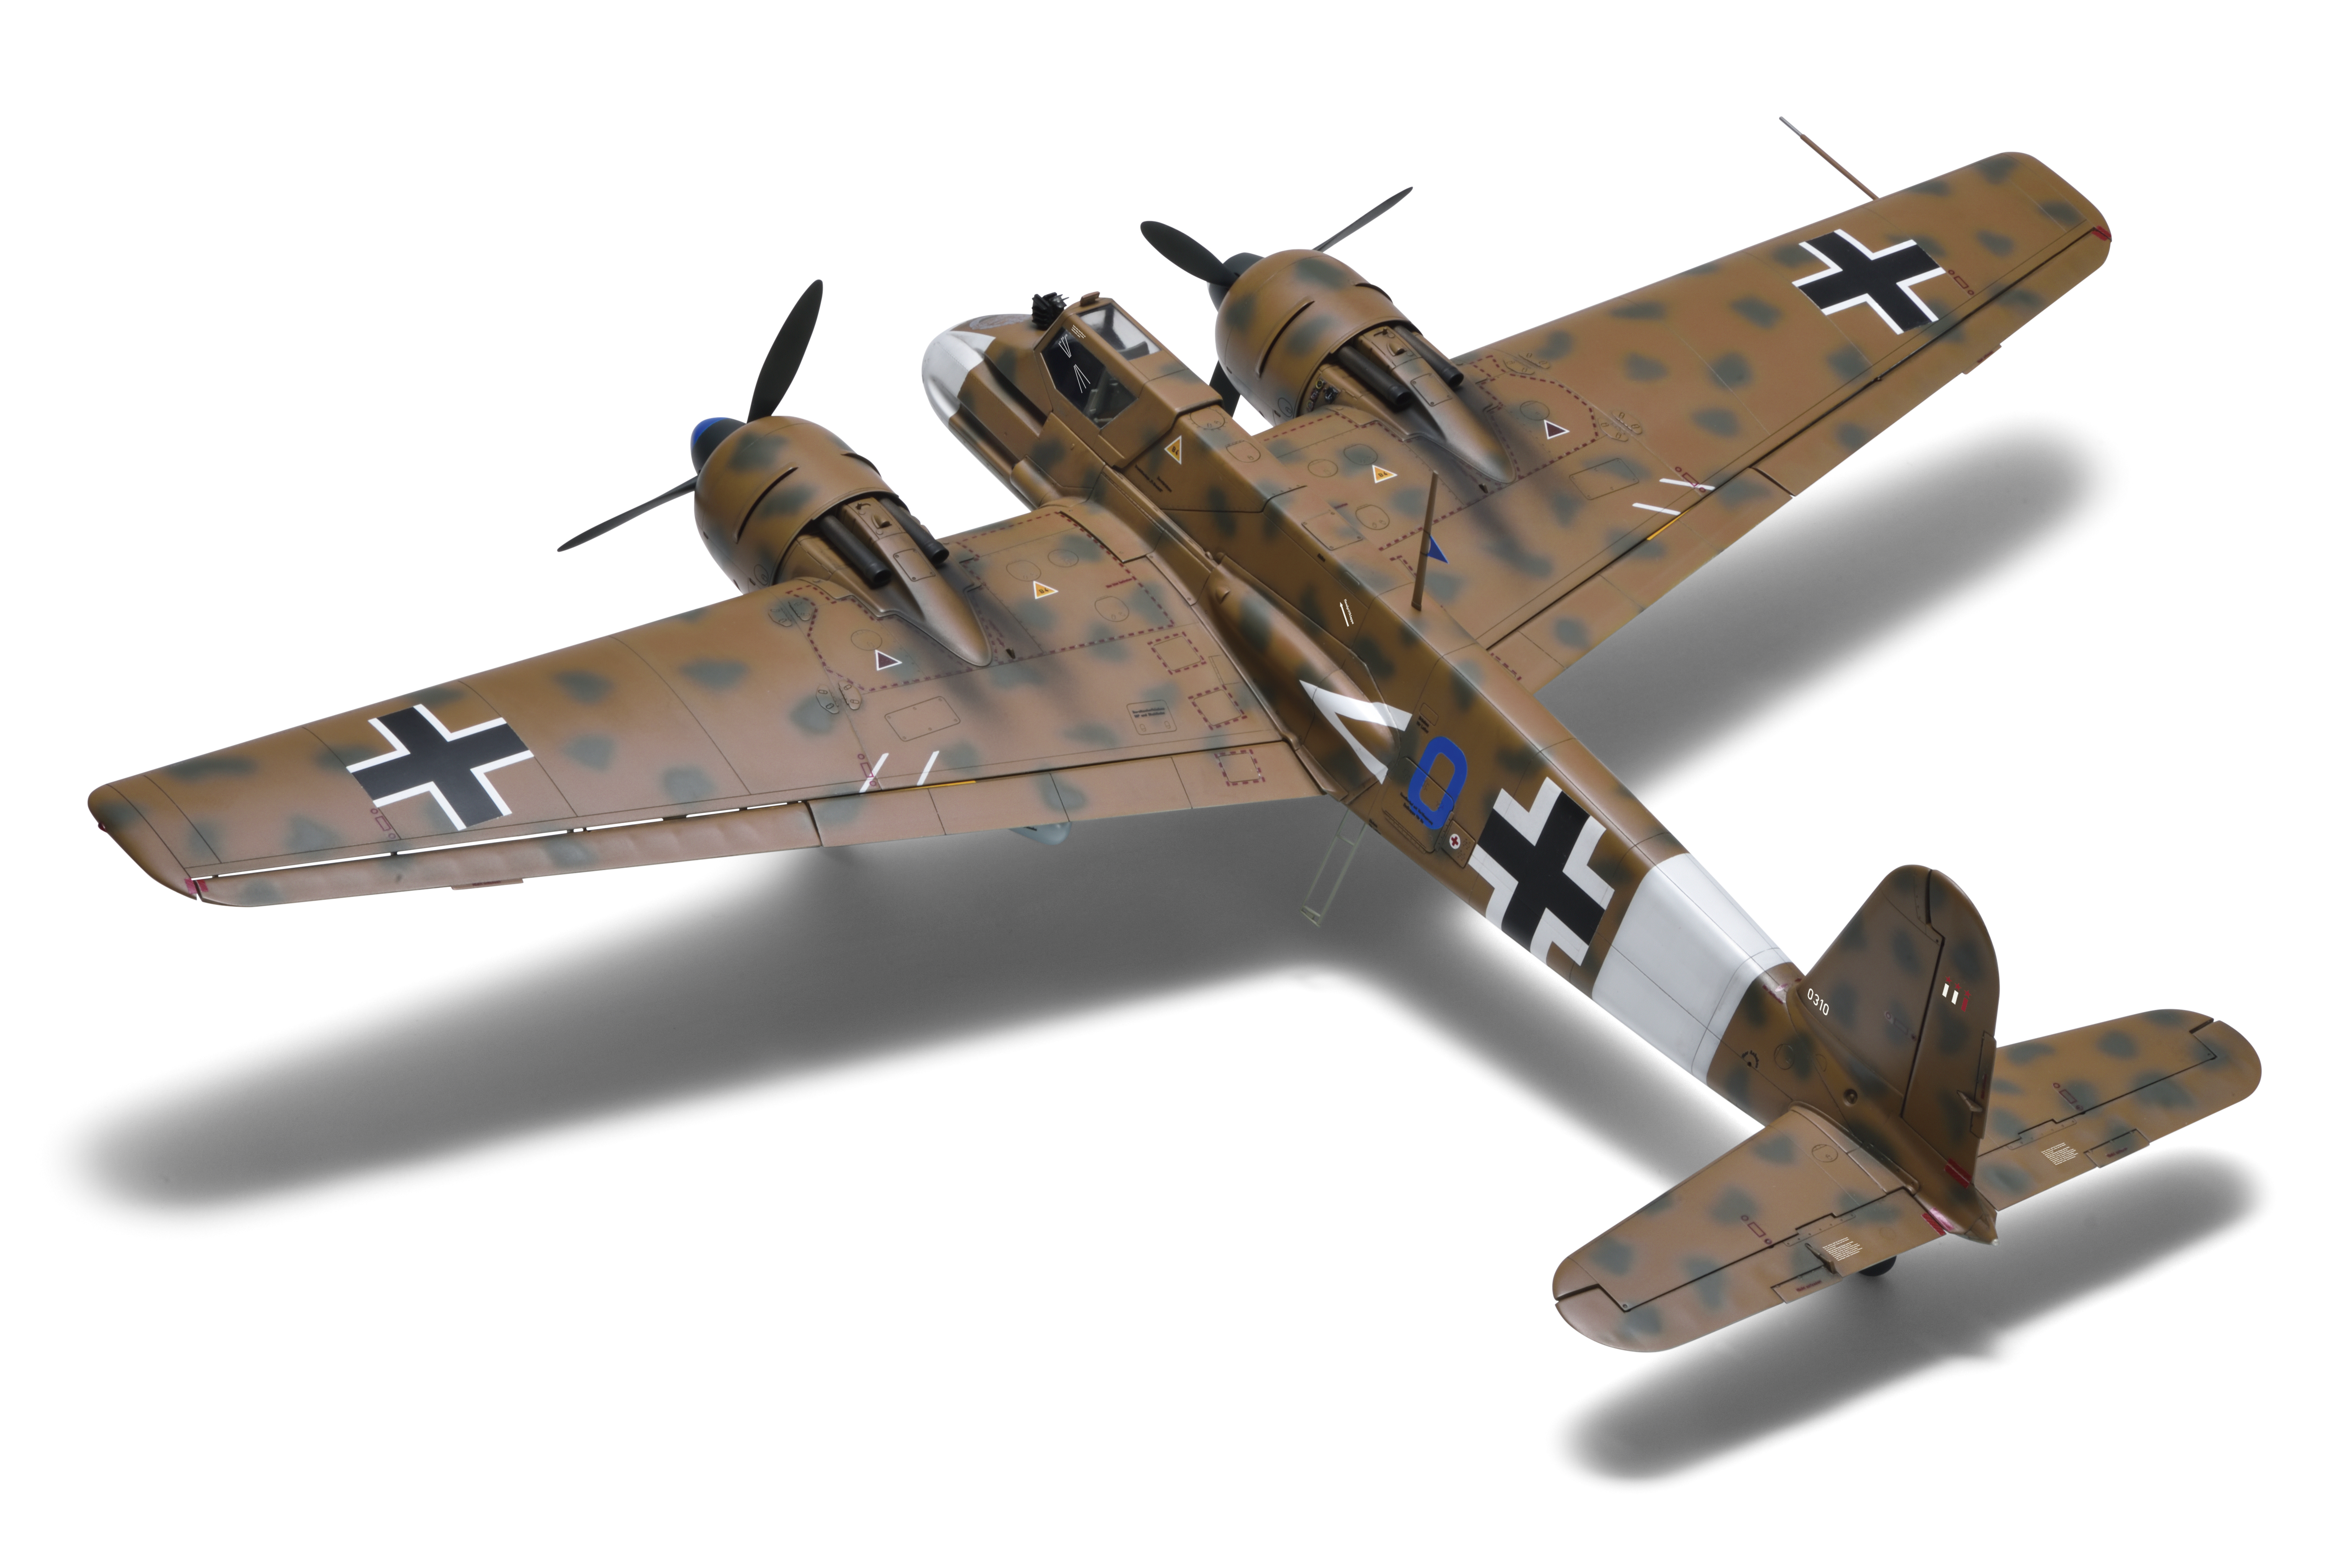 ボークス ドイツ空軍双発地上攻撃機 ヘンシェル プラキットの決定版 Sws を新発売 ボークスのプレスリリース